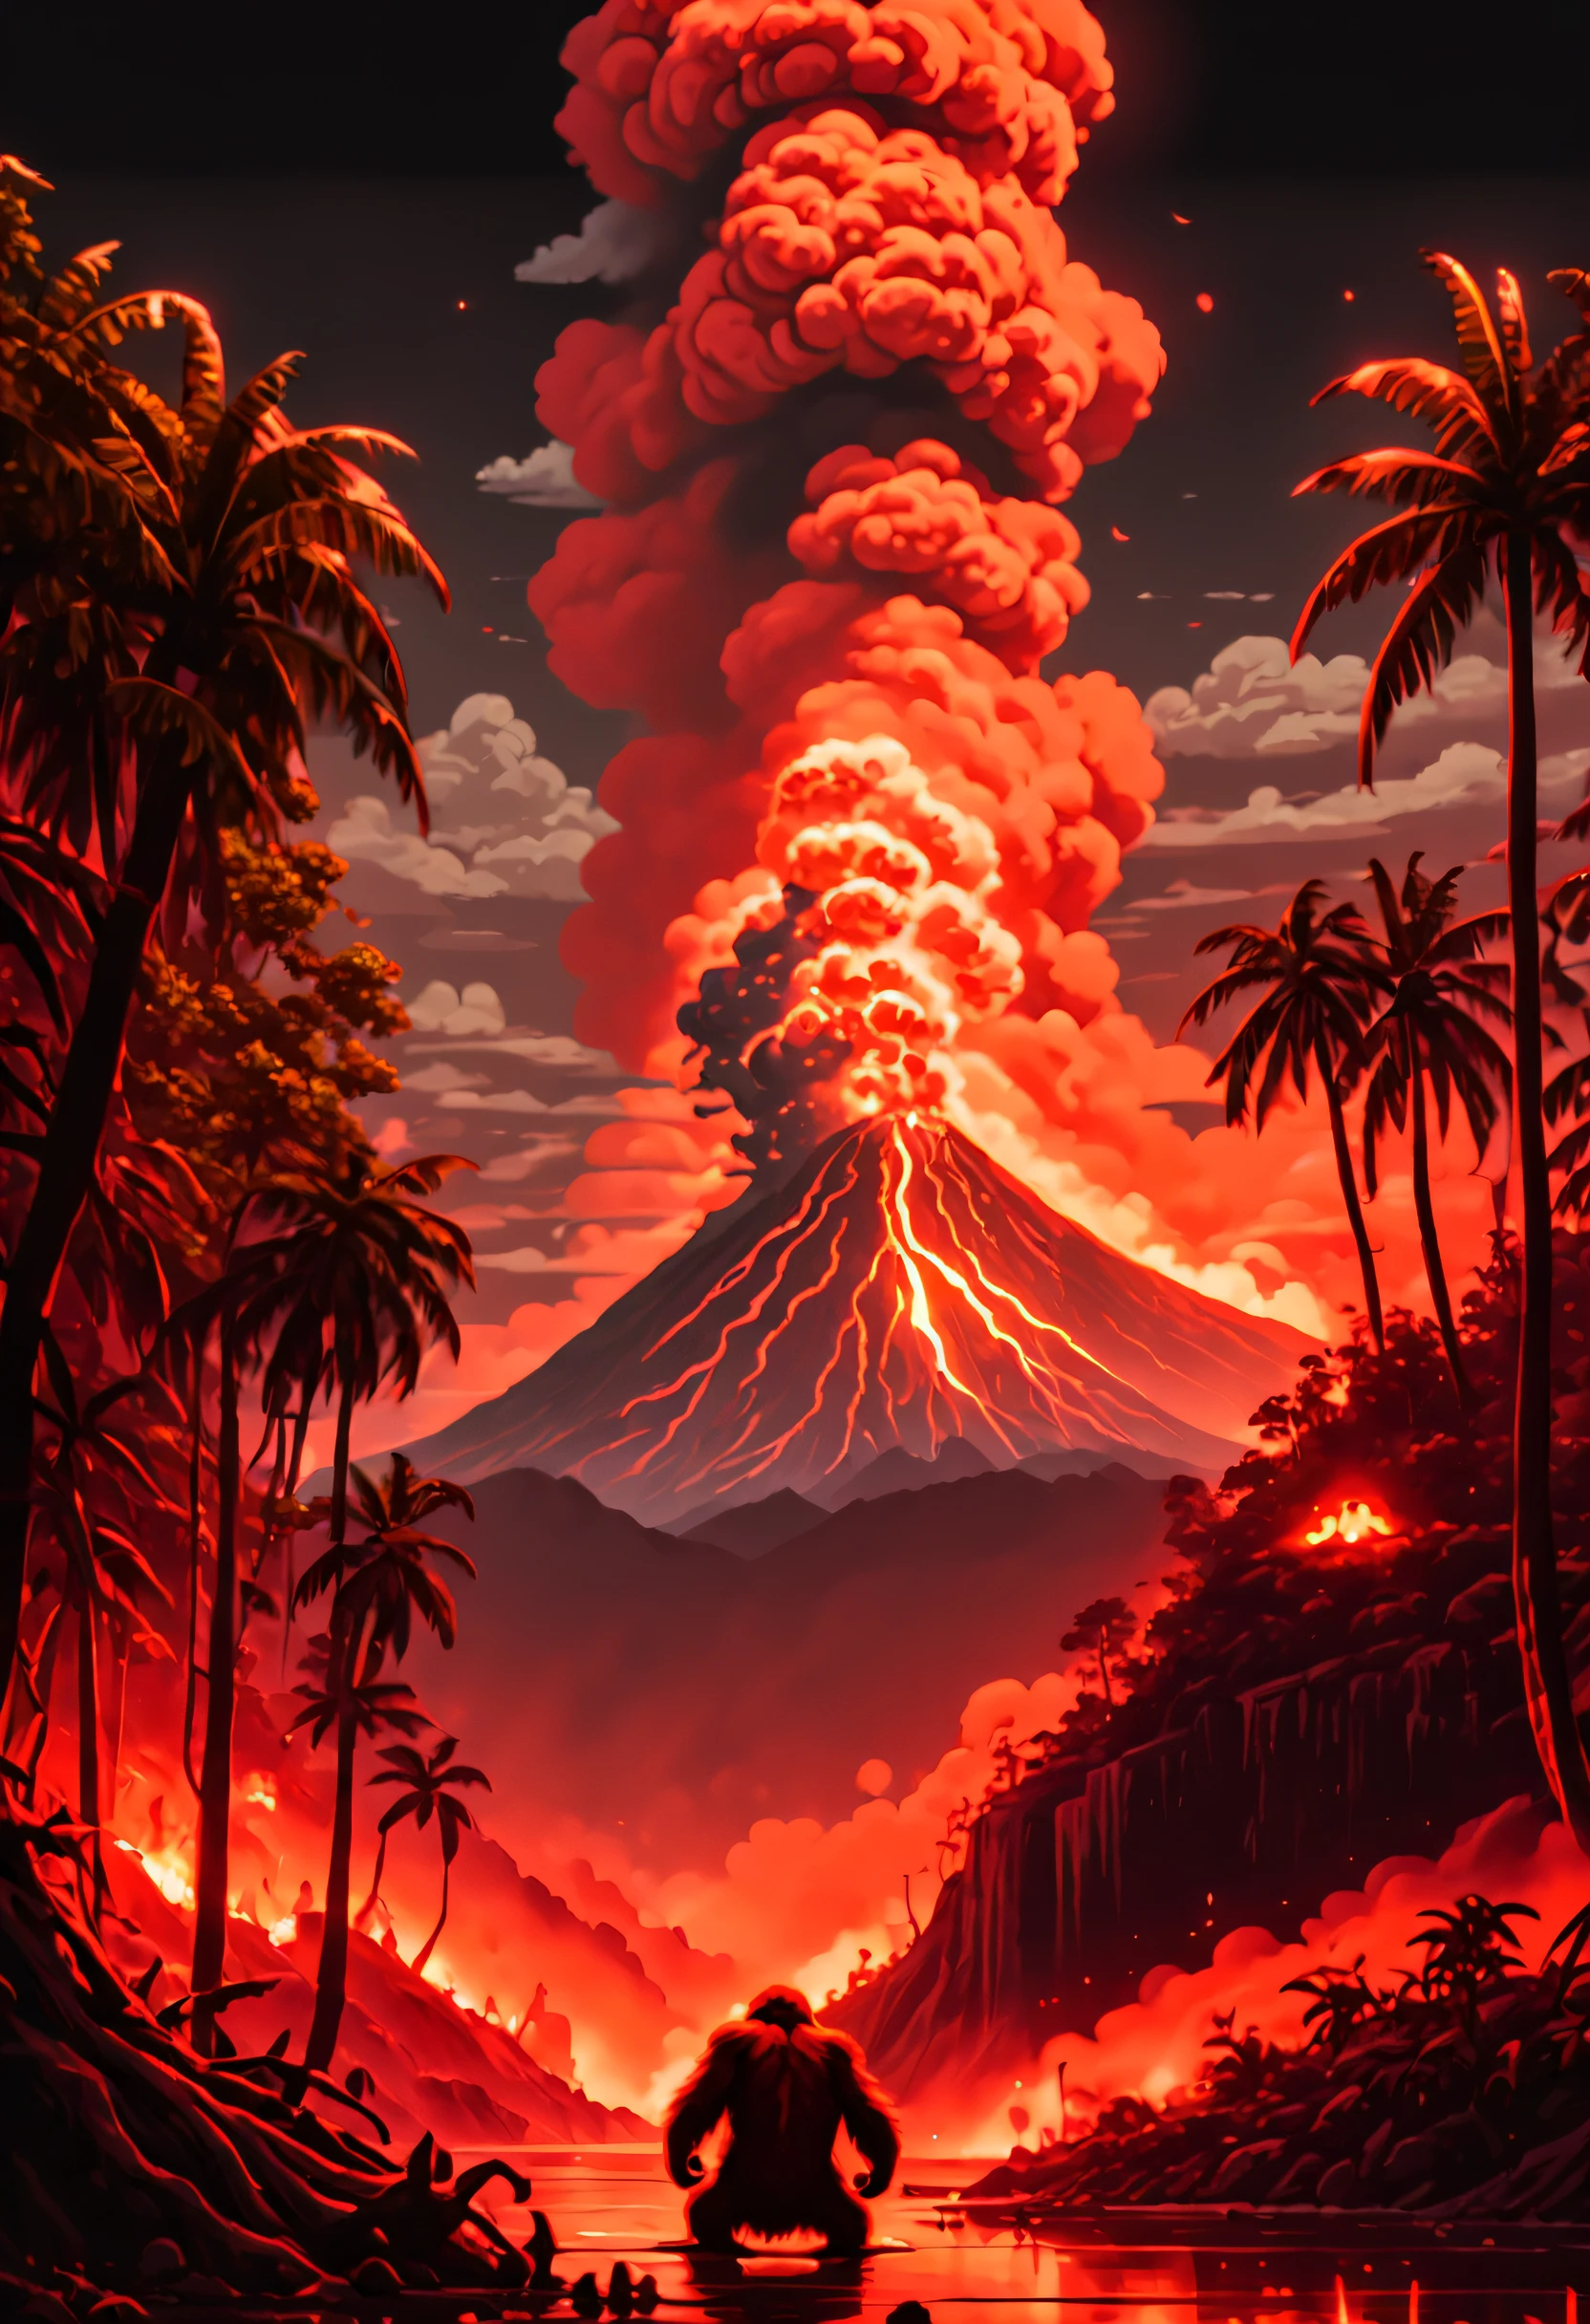 (最高品質,4K,8k,高解像度,傑作:1.2)，放射能汚染と火山噴火，煙が噴き出した，火山の噴火に苛立たしげに腕を振るオランウータンの群れ,非現実的な雰囲気を醸し出す. 月明かりの火山噴火を浴びる， 空中に漂う煙に不気味な輝きを放つ.ドット絵